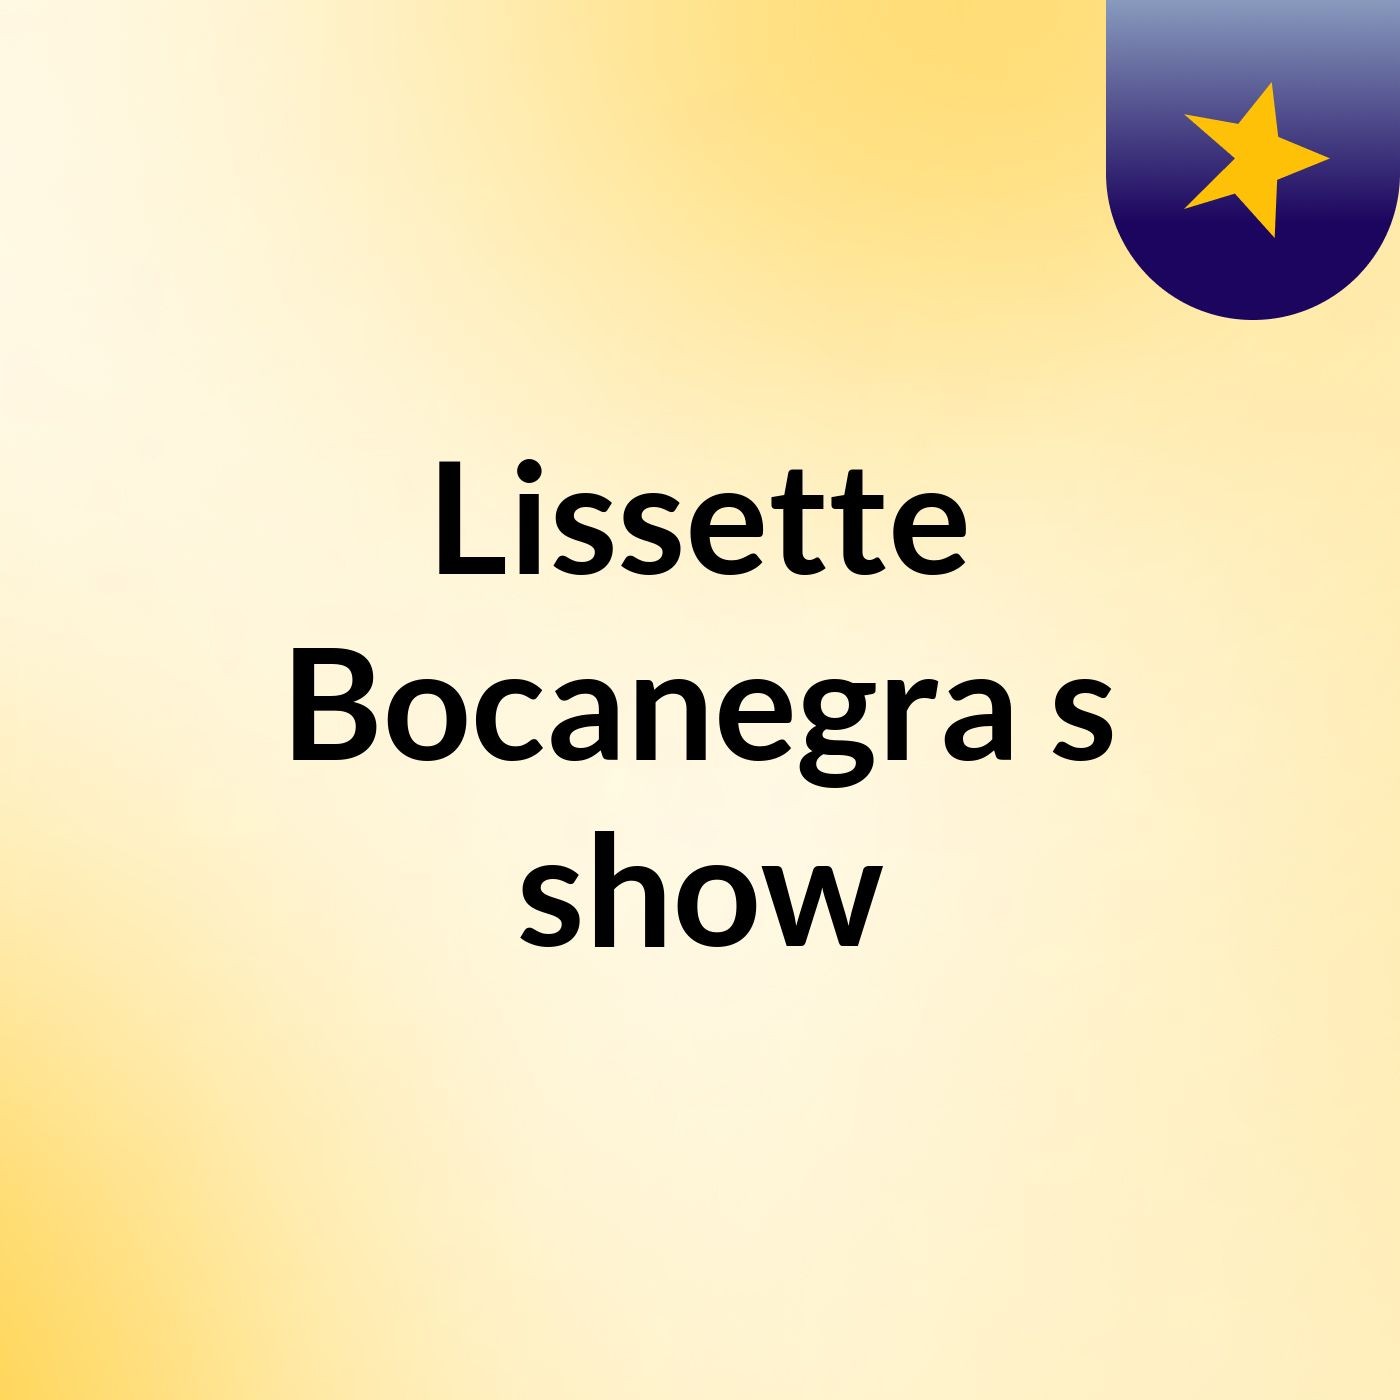 Lissette Bocanegra's show